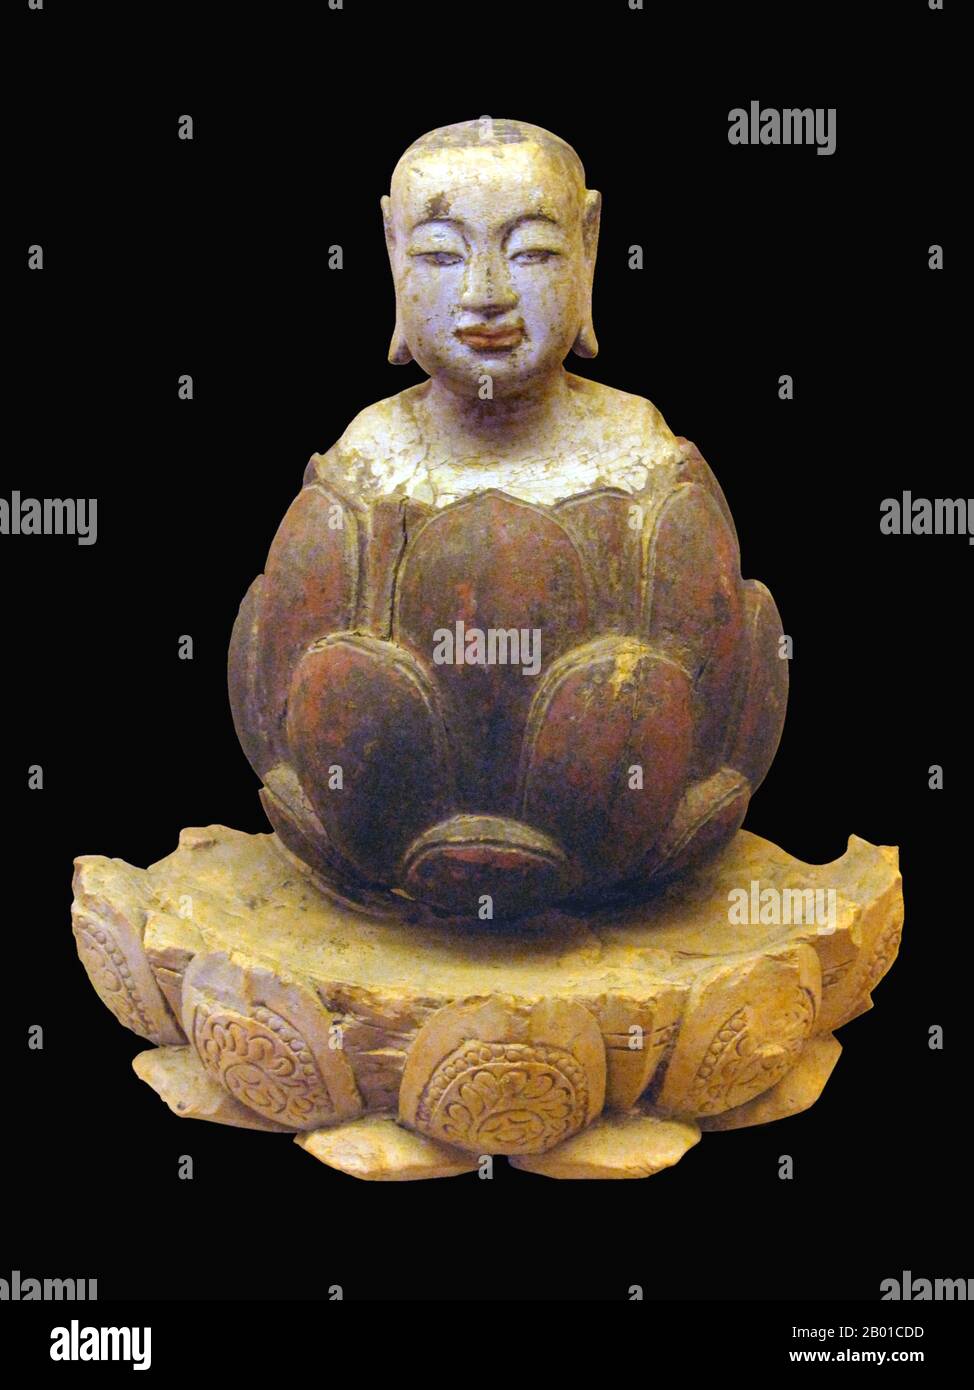 Vietnam: Der Junge Buddha, der aus dem Lotus aufsteigt. Karmesin und vergoldetes Holz, Trần-Hồ-Dynastie, 14.-15. Jahrhundert. Foto von Gryffindor - Jbarta (CC BY-SA 3,0 Lizenz). Im Buddhismus vergleicht sich der Buddha im Anguttara Nikaya mit einem Lotus, indem er sagt, dass die Lotusblume unbefleckt aus dem schlammigen Wasser aufsteigt, frei von den Trübungen, die in dem spezifischen Sutta gelehrt werden. Daher repräsentiert der Lotus symbolisch die Reinheit des Körpers, der Sprache und des Geistes, die über materielle Anhaftung und physisches Begehren hinausschwebt. Lotusthrone sind der normale Sockel für die wichtigsten buddhistischen Figuren der Kunst Stockfoto